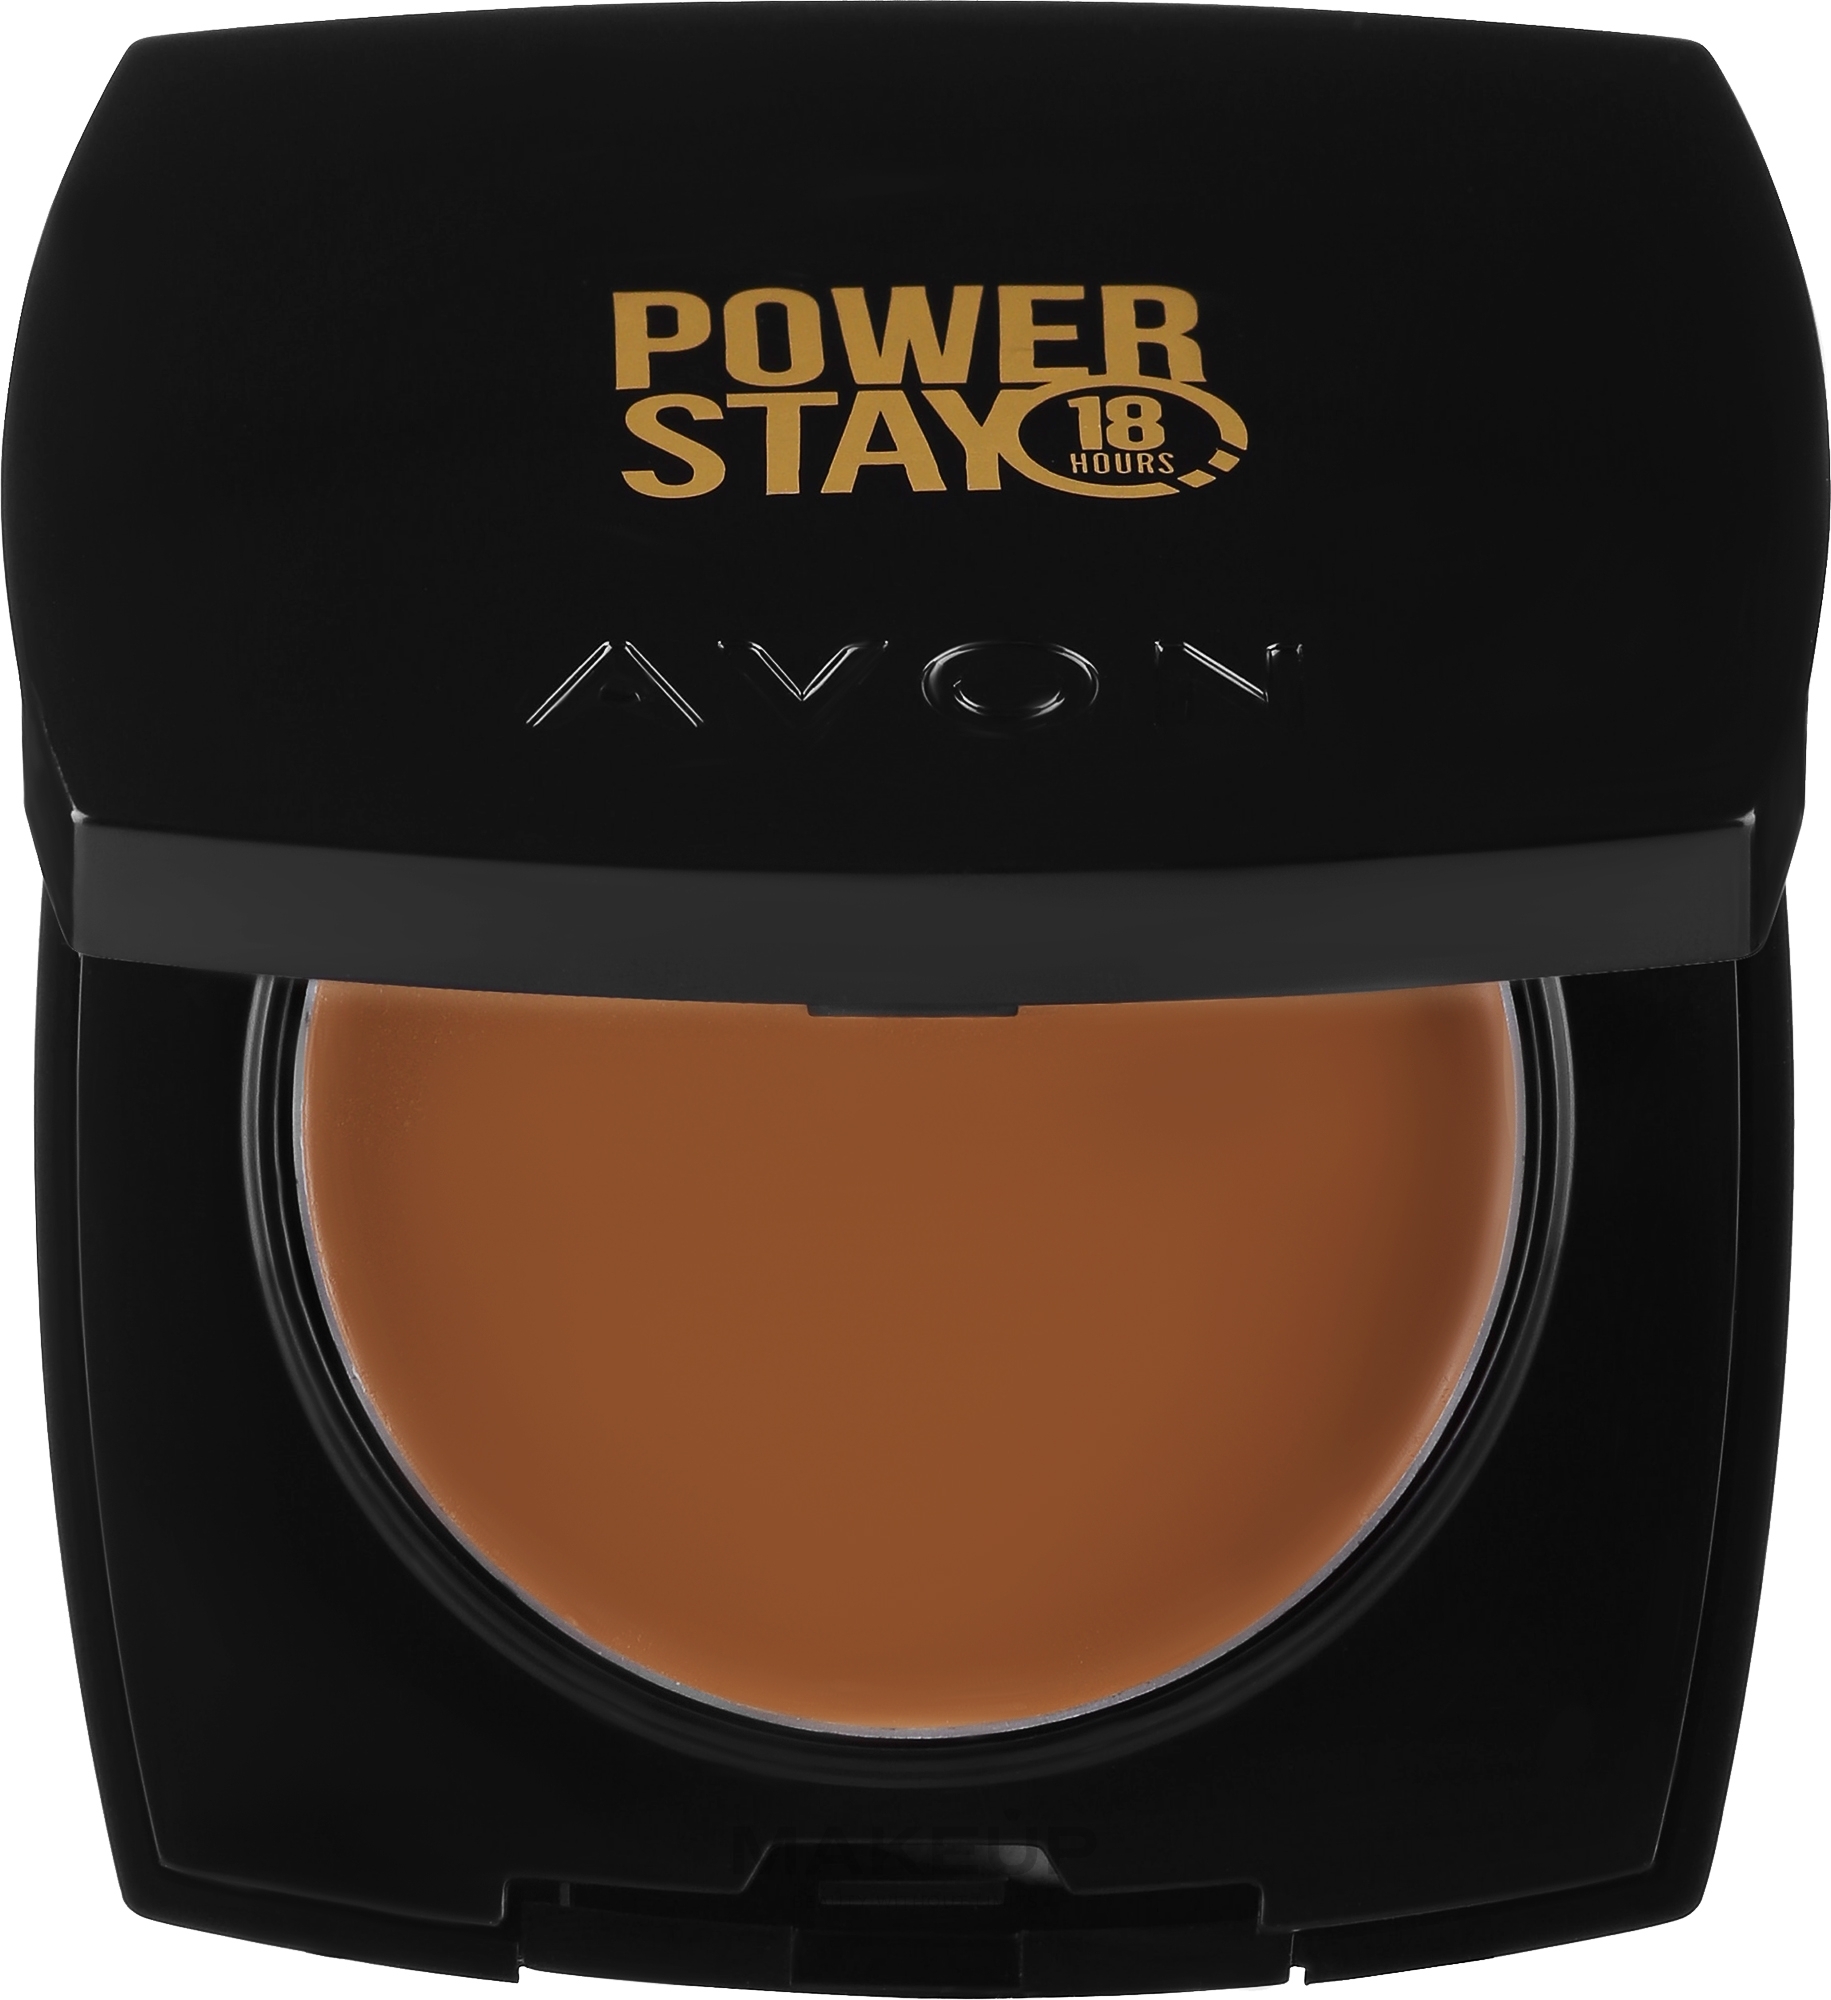 PRZECENA! Kompaktowy kremowy puder do twarzy - Avon Power Stay 18 Hours Cream-To-Powder Foundation * — Zdjęcie 510N - Walnut